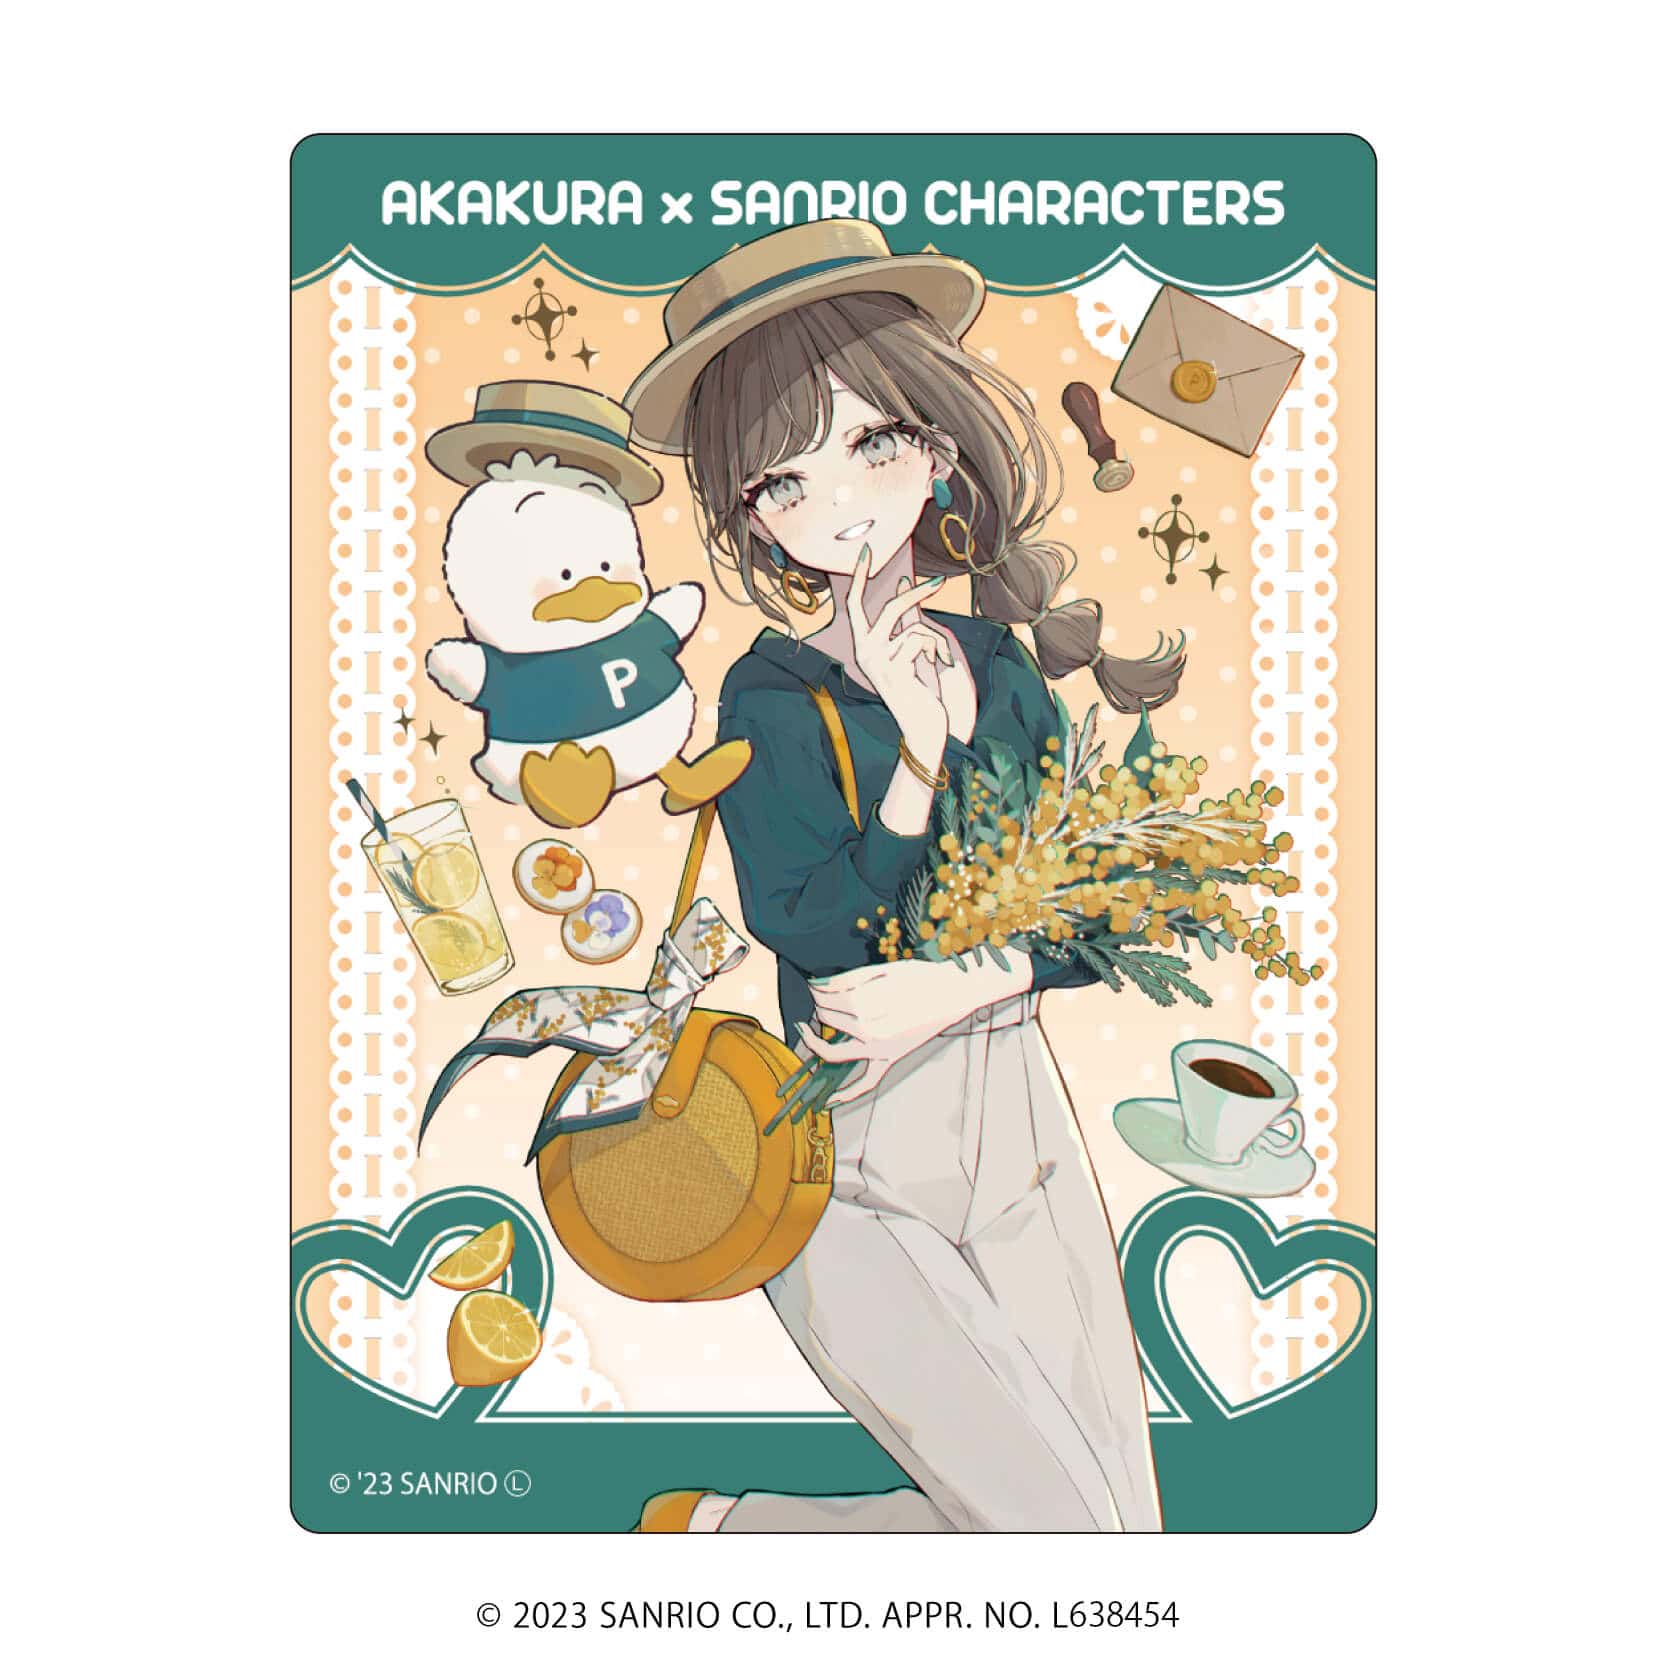 アクリルカード「赤倉×サンリオキャラクターズ」01/コンプリートBOX(全11種)(描き下ろしイラスト)